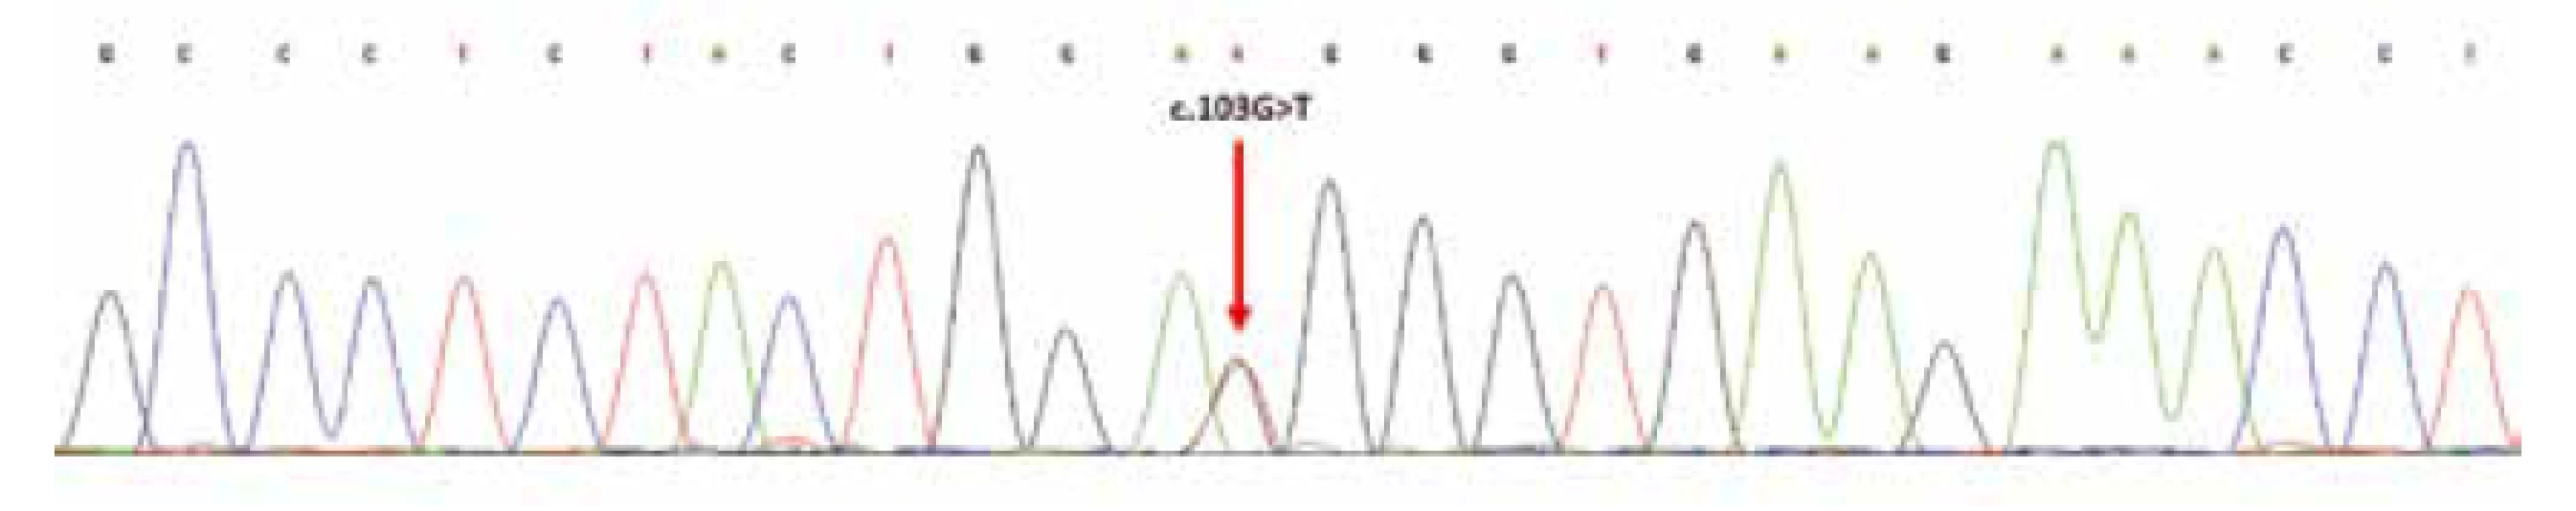 Sekvenční analýza exonu 2 genu
H3F3A; šipka označuje heterozygotní substituční
mutaci v pozici c.103G>T; resp.
náhradu aminokyselin glycin za tryptofan
(p.Gly35Trp; dle původního označení G34W).